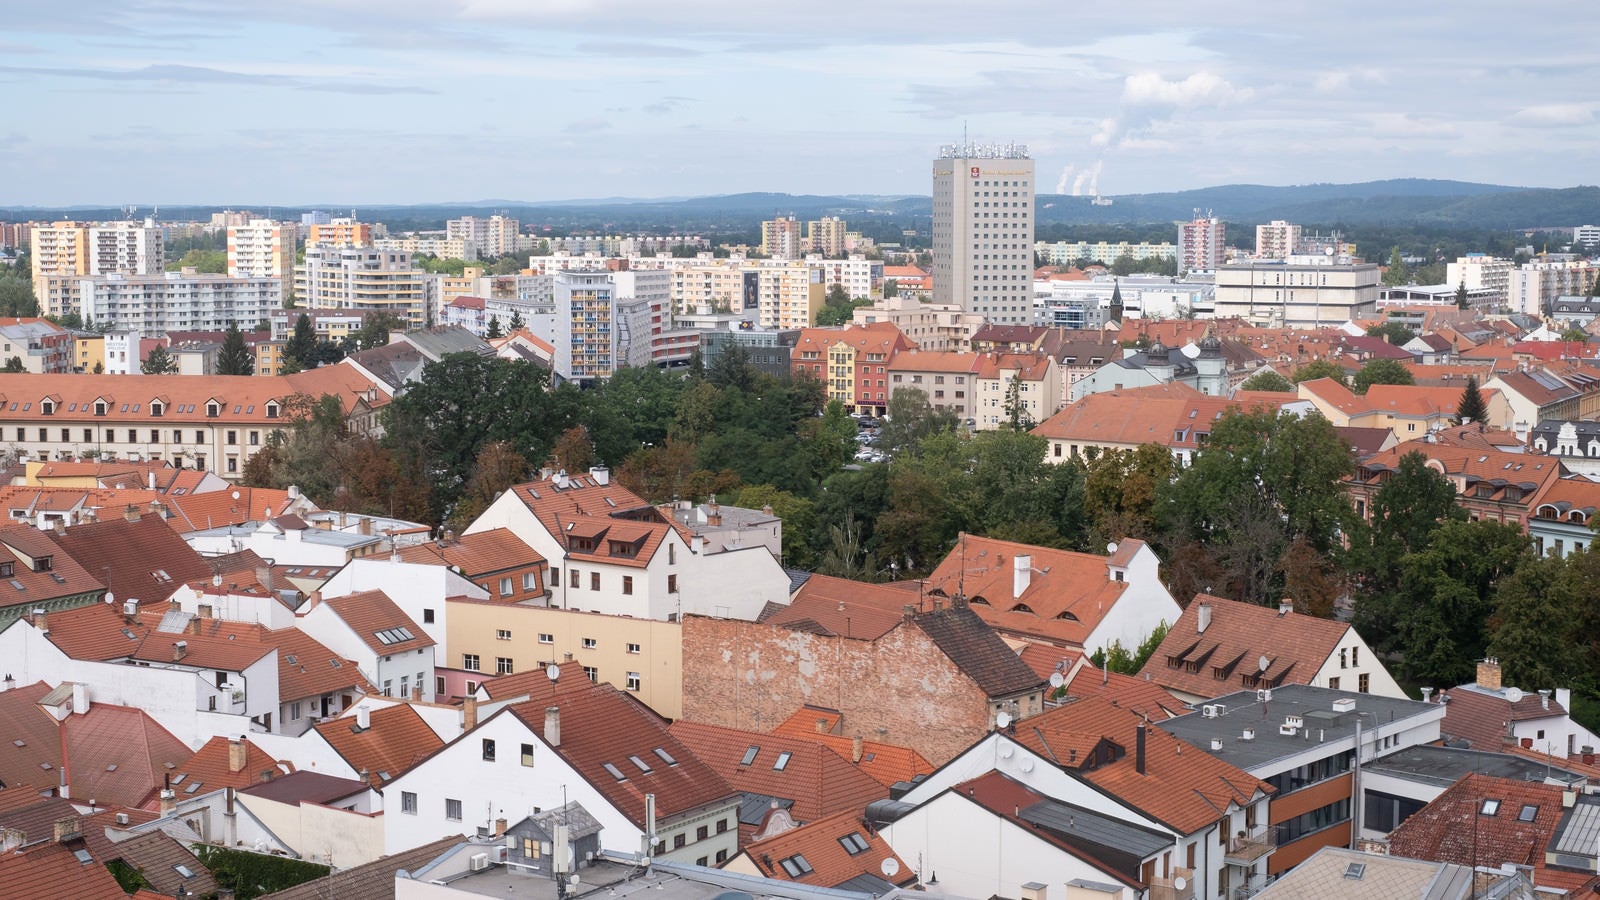 「赤茶色の屋根から始まる街並み（チェコ共和国・ブドヴァル）」の写真